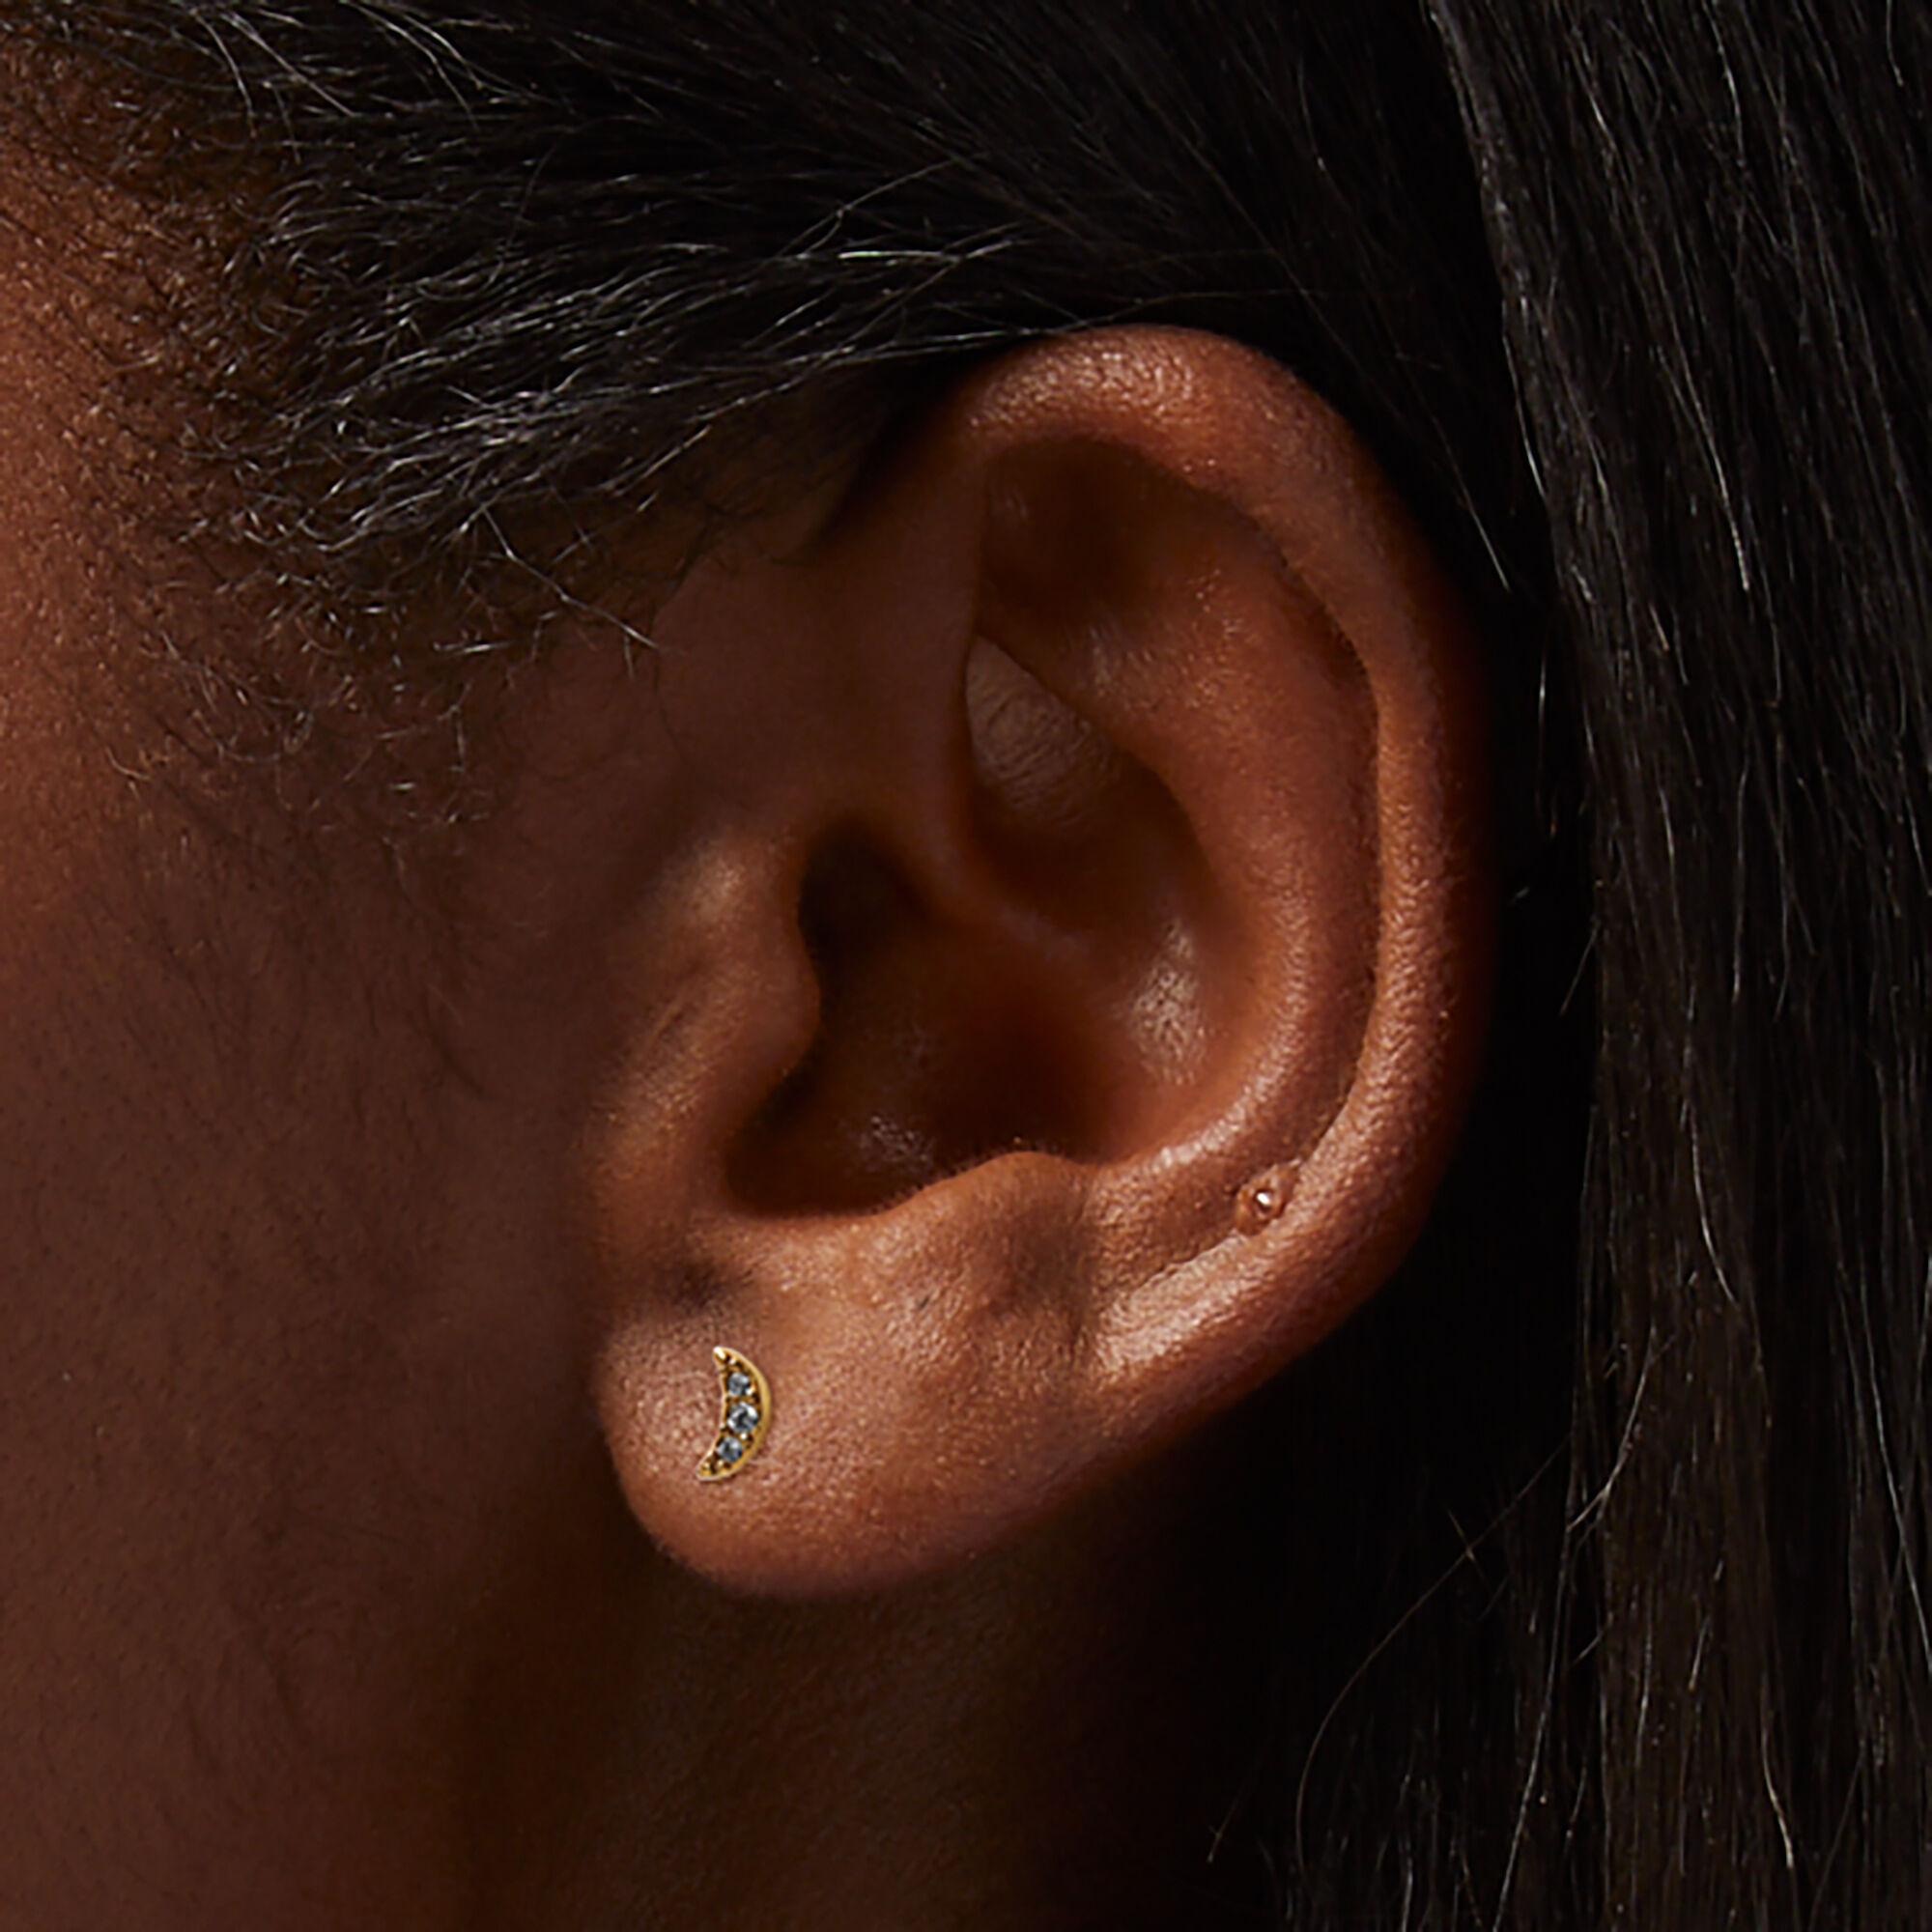 Titanium Earrings Gold Huggie Earrings Small Hoop Earrings Cartilage Earring  Forward Helix Earring Conch Hoop Daith Piercing 18ga 1mm Septum - Etsy